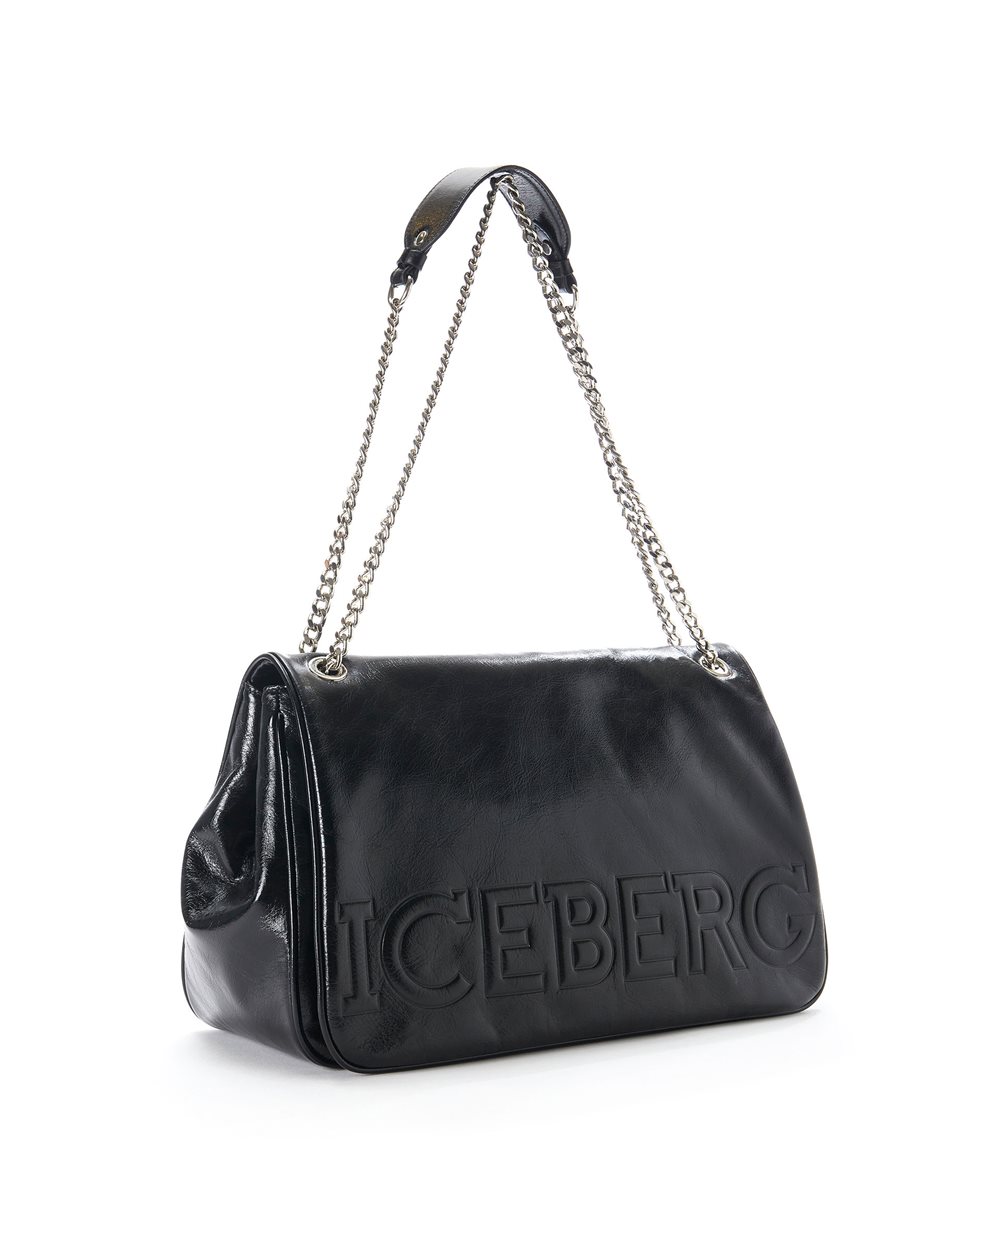 Shoulder bag with logo - Iceberg - Official Website